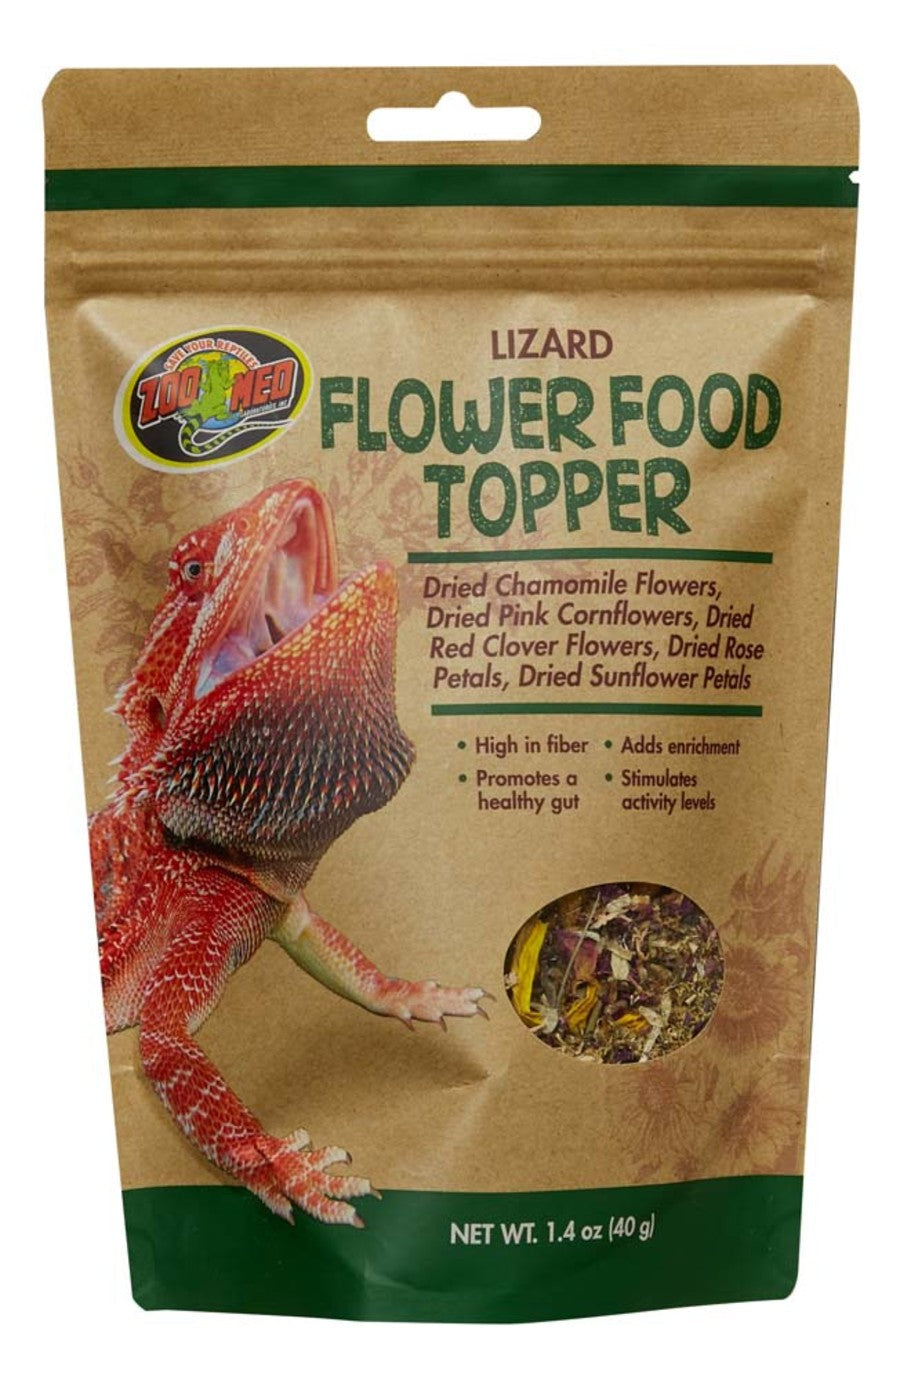 Zoo Med Lizard Flower Food Topper 1ea/1.4 oz